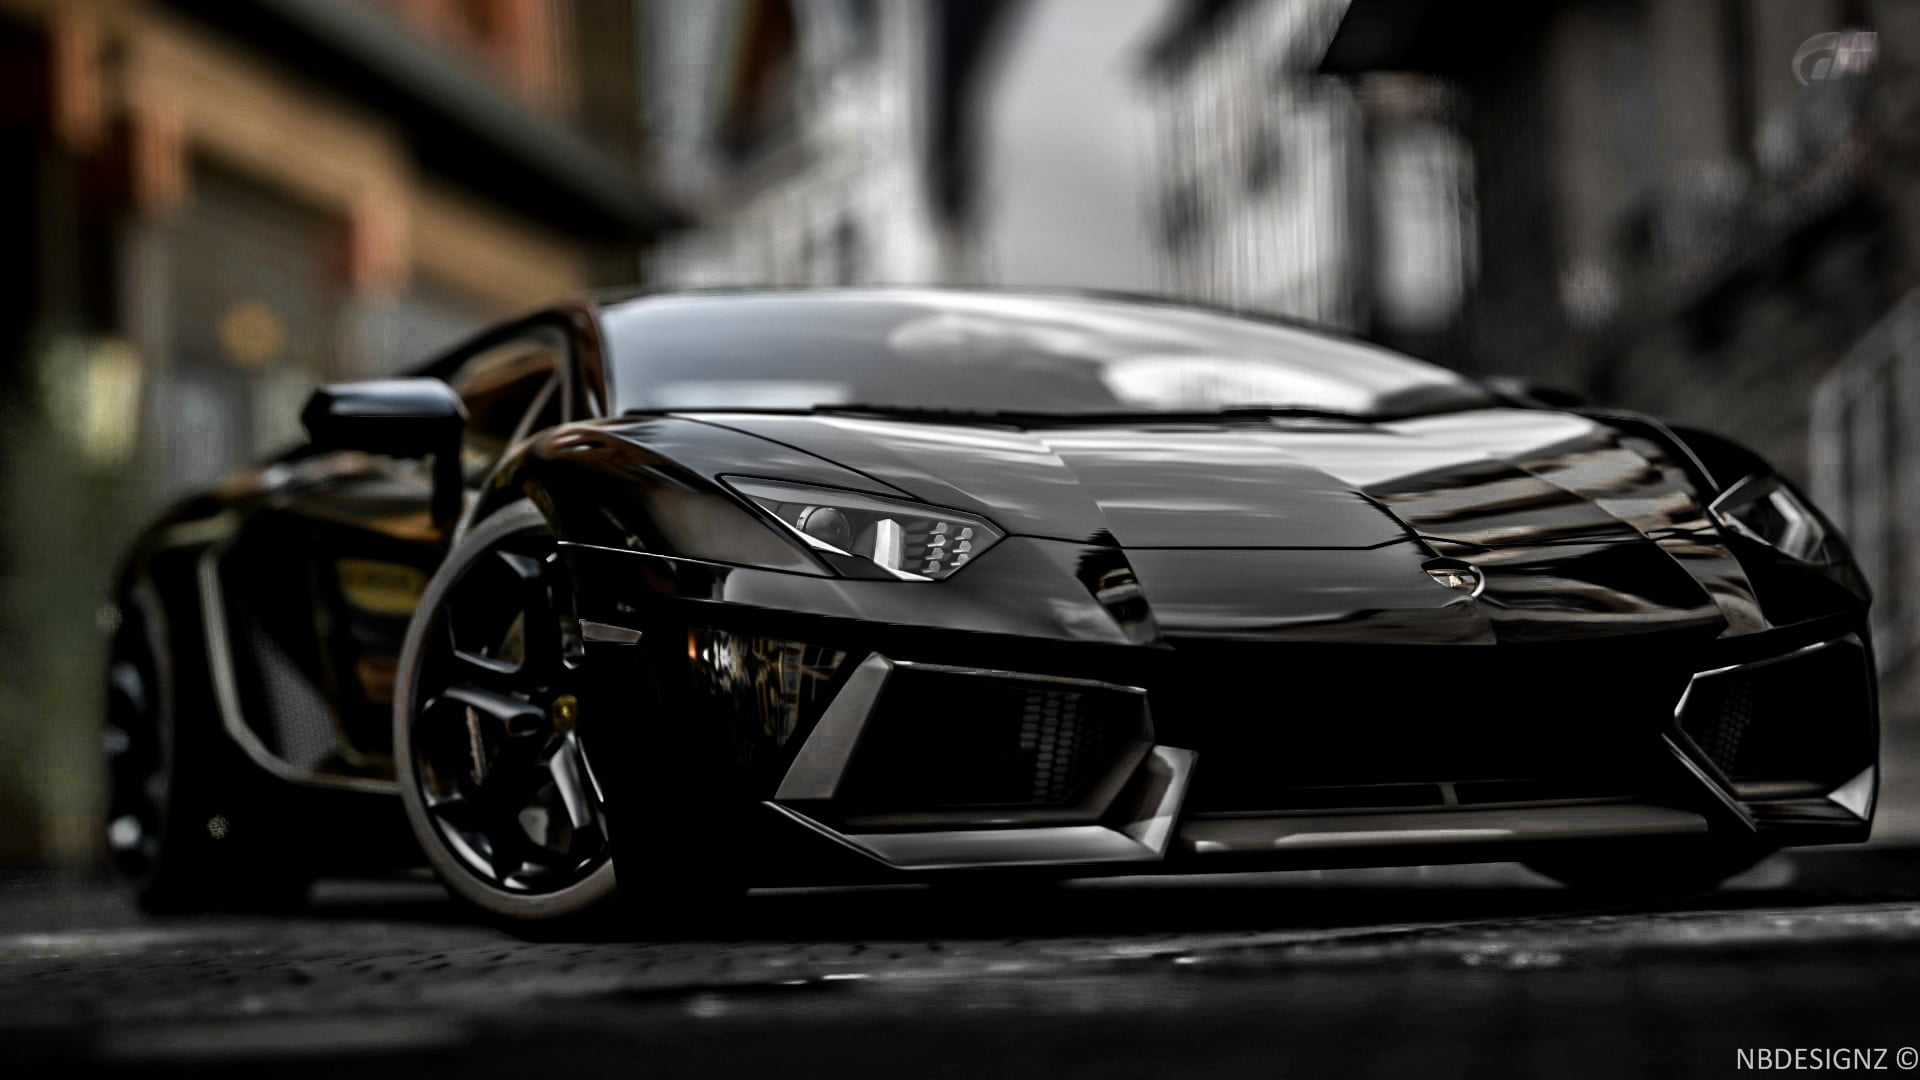 black sports car, Lamborghini, Lamborghini Aventador, vehicle